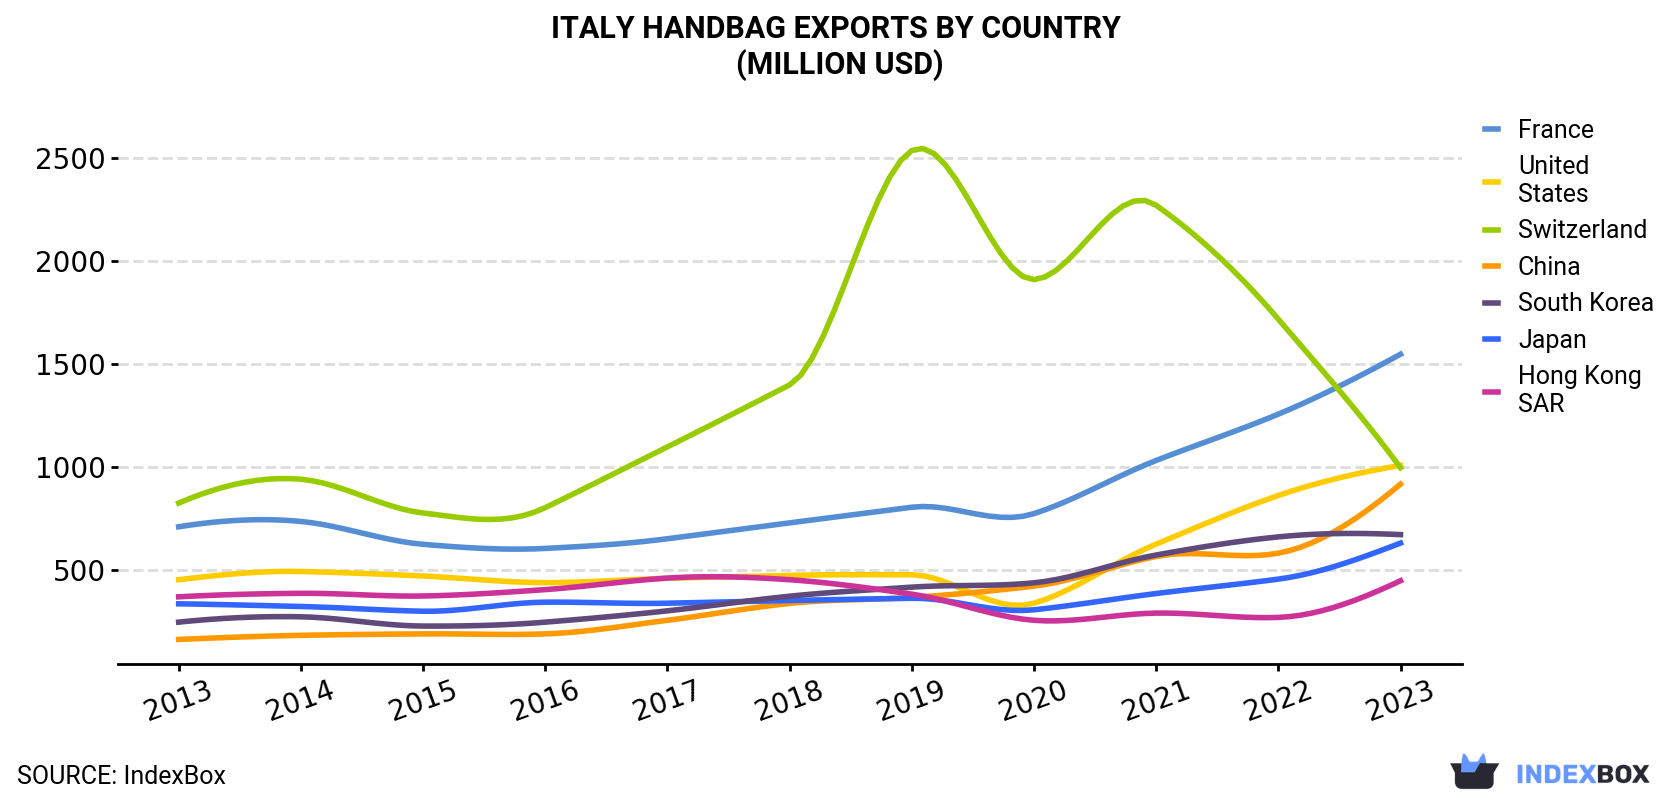 Italy Handbag Exports By Country (Million USD)